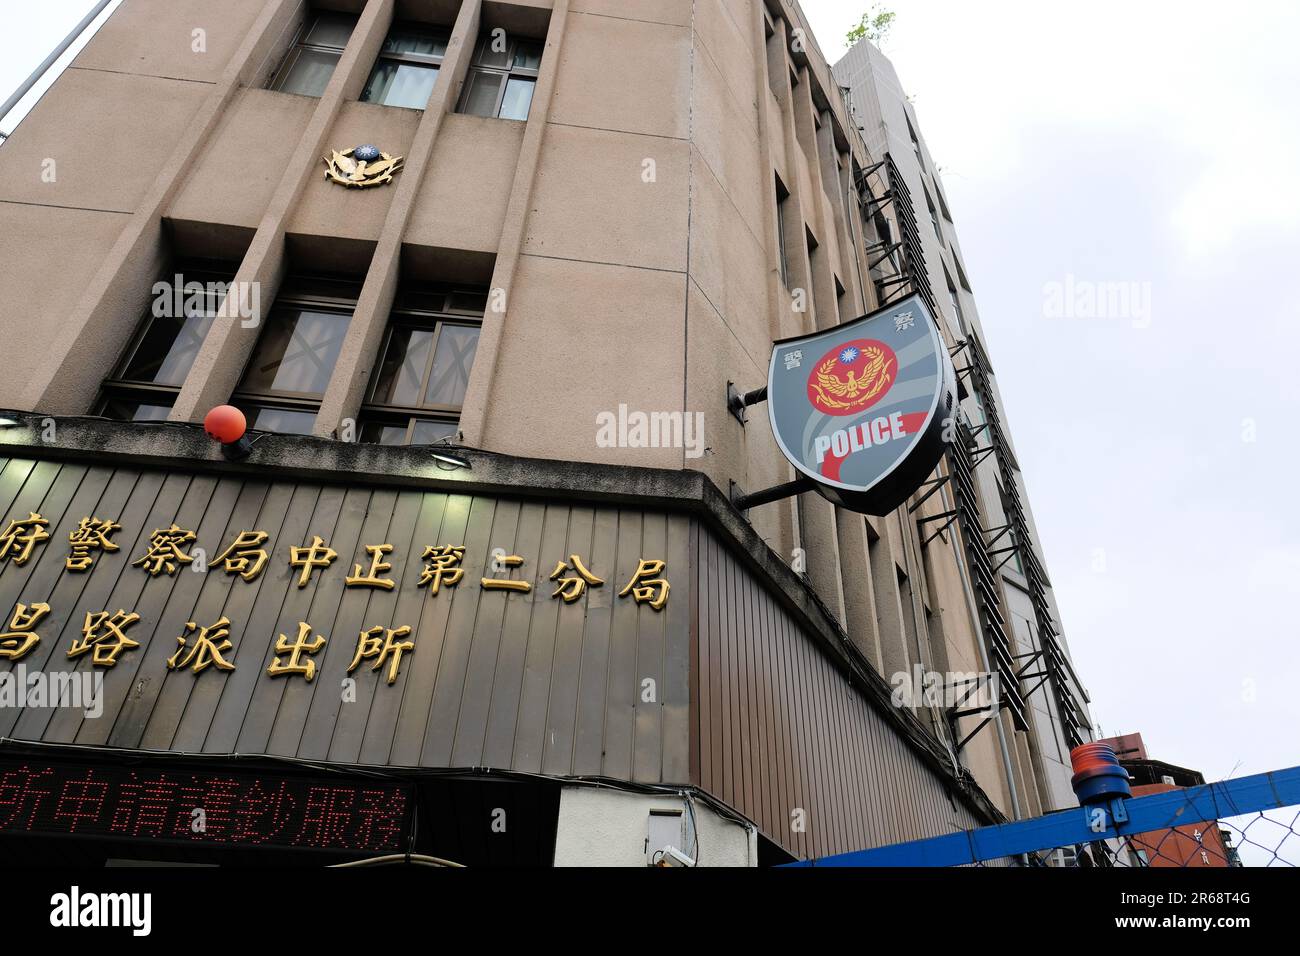 Firma e logo all'esterno di una stazione di polizia a Taipei, Taiwan; Agenzia nazionale di polizia responsabile della pubblica sicurezza e delle forze dell'ordine. Foto Stock